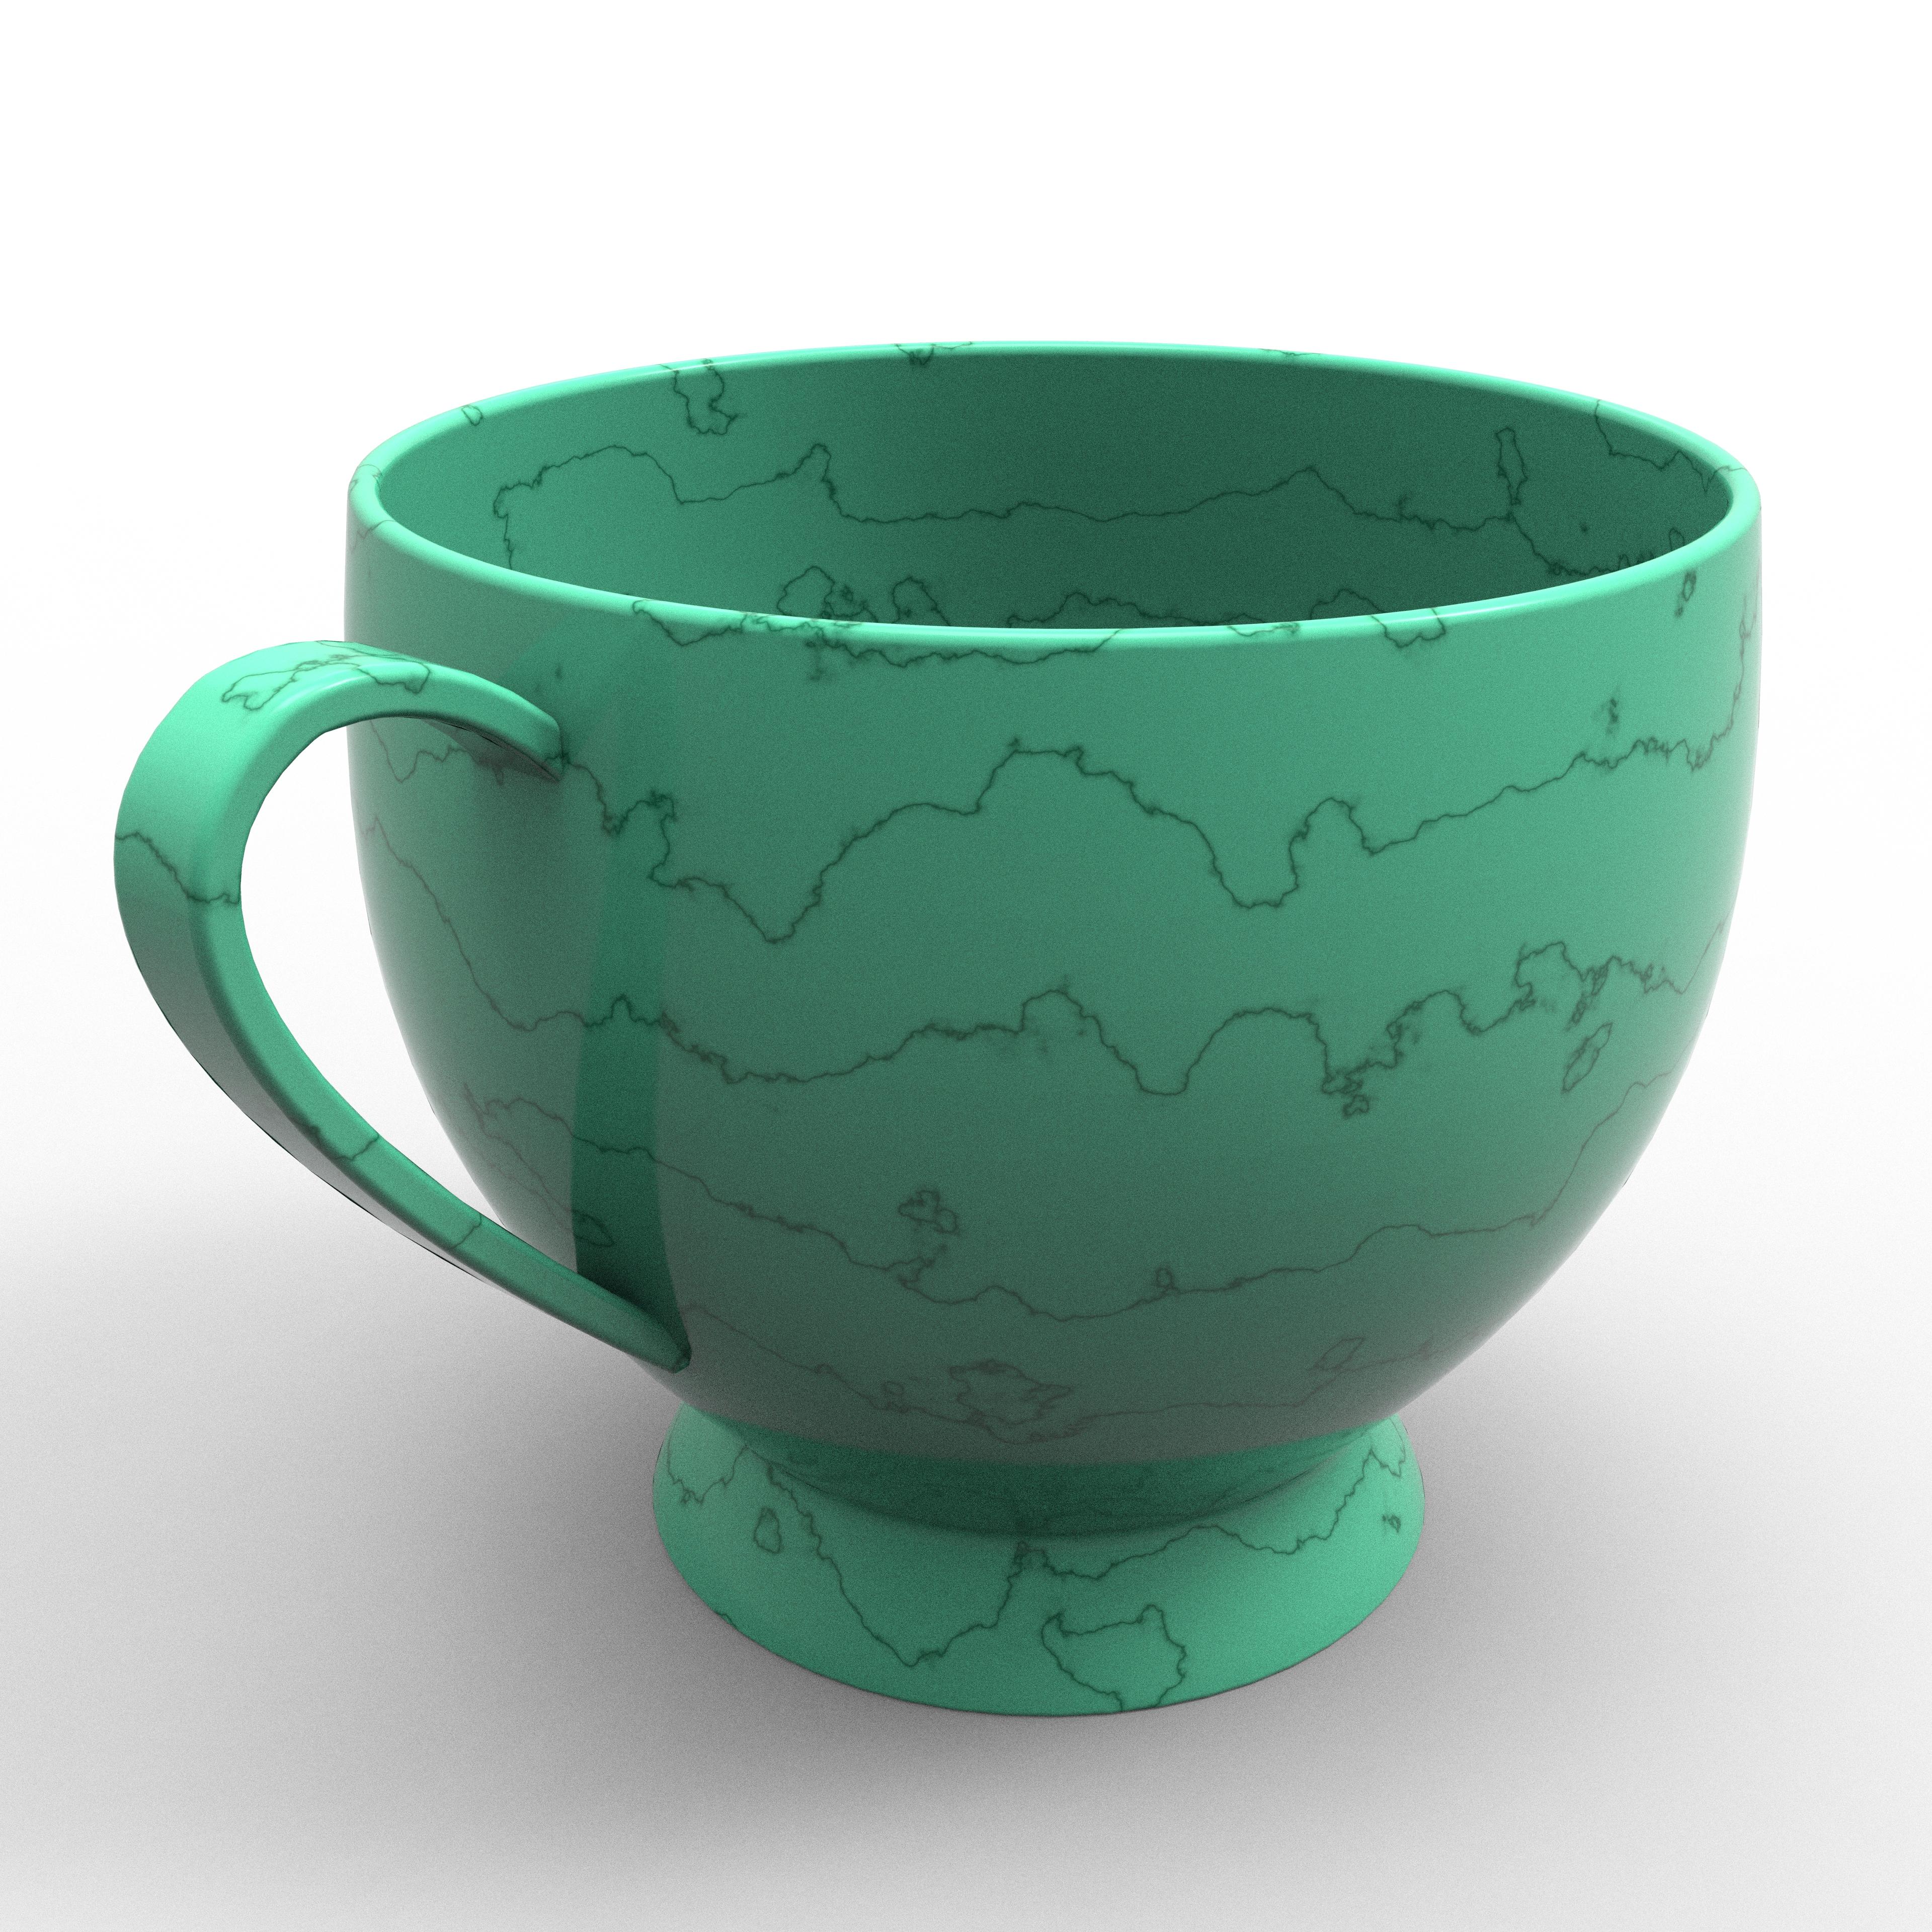 Cup 3d model